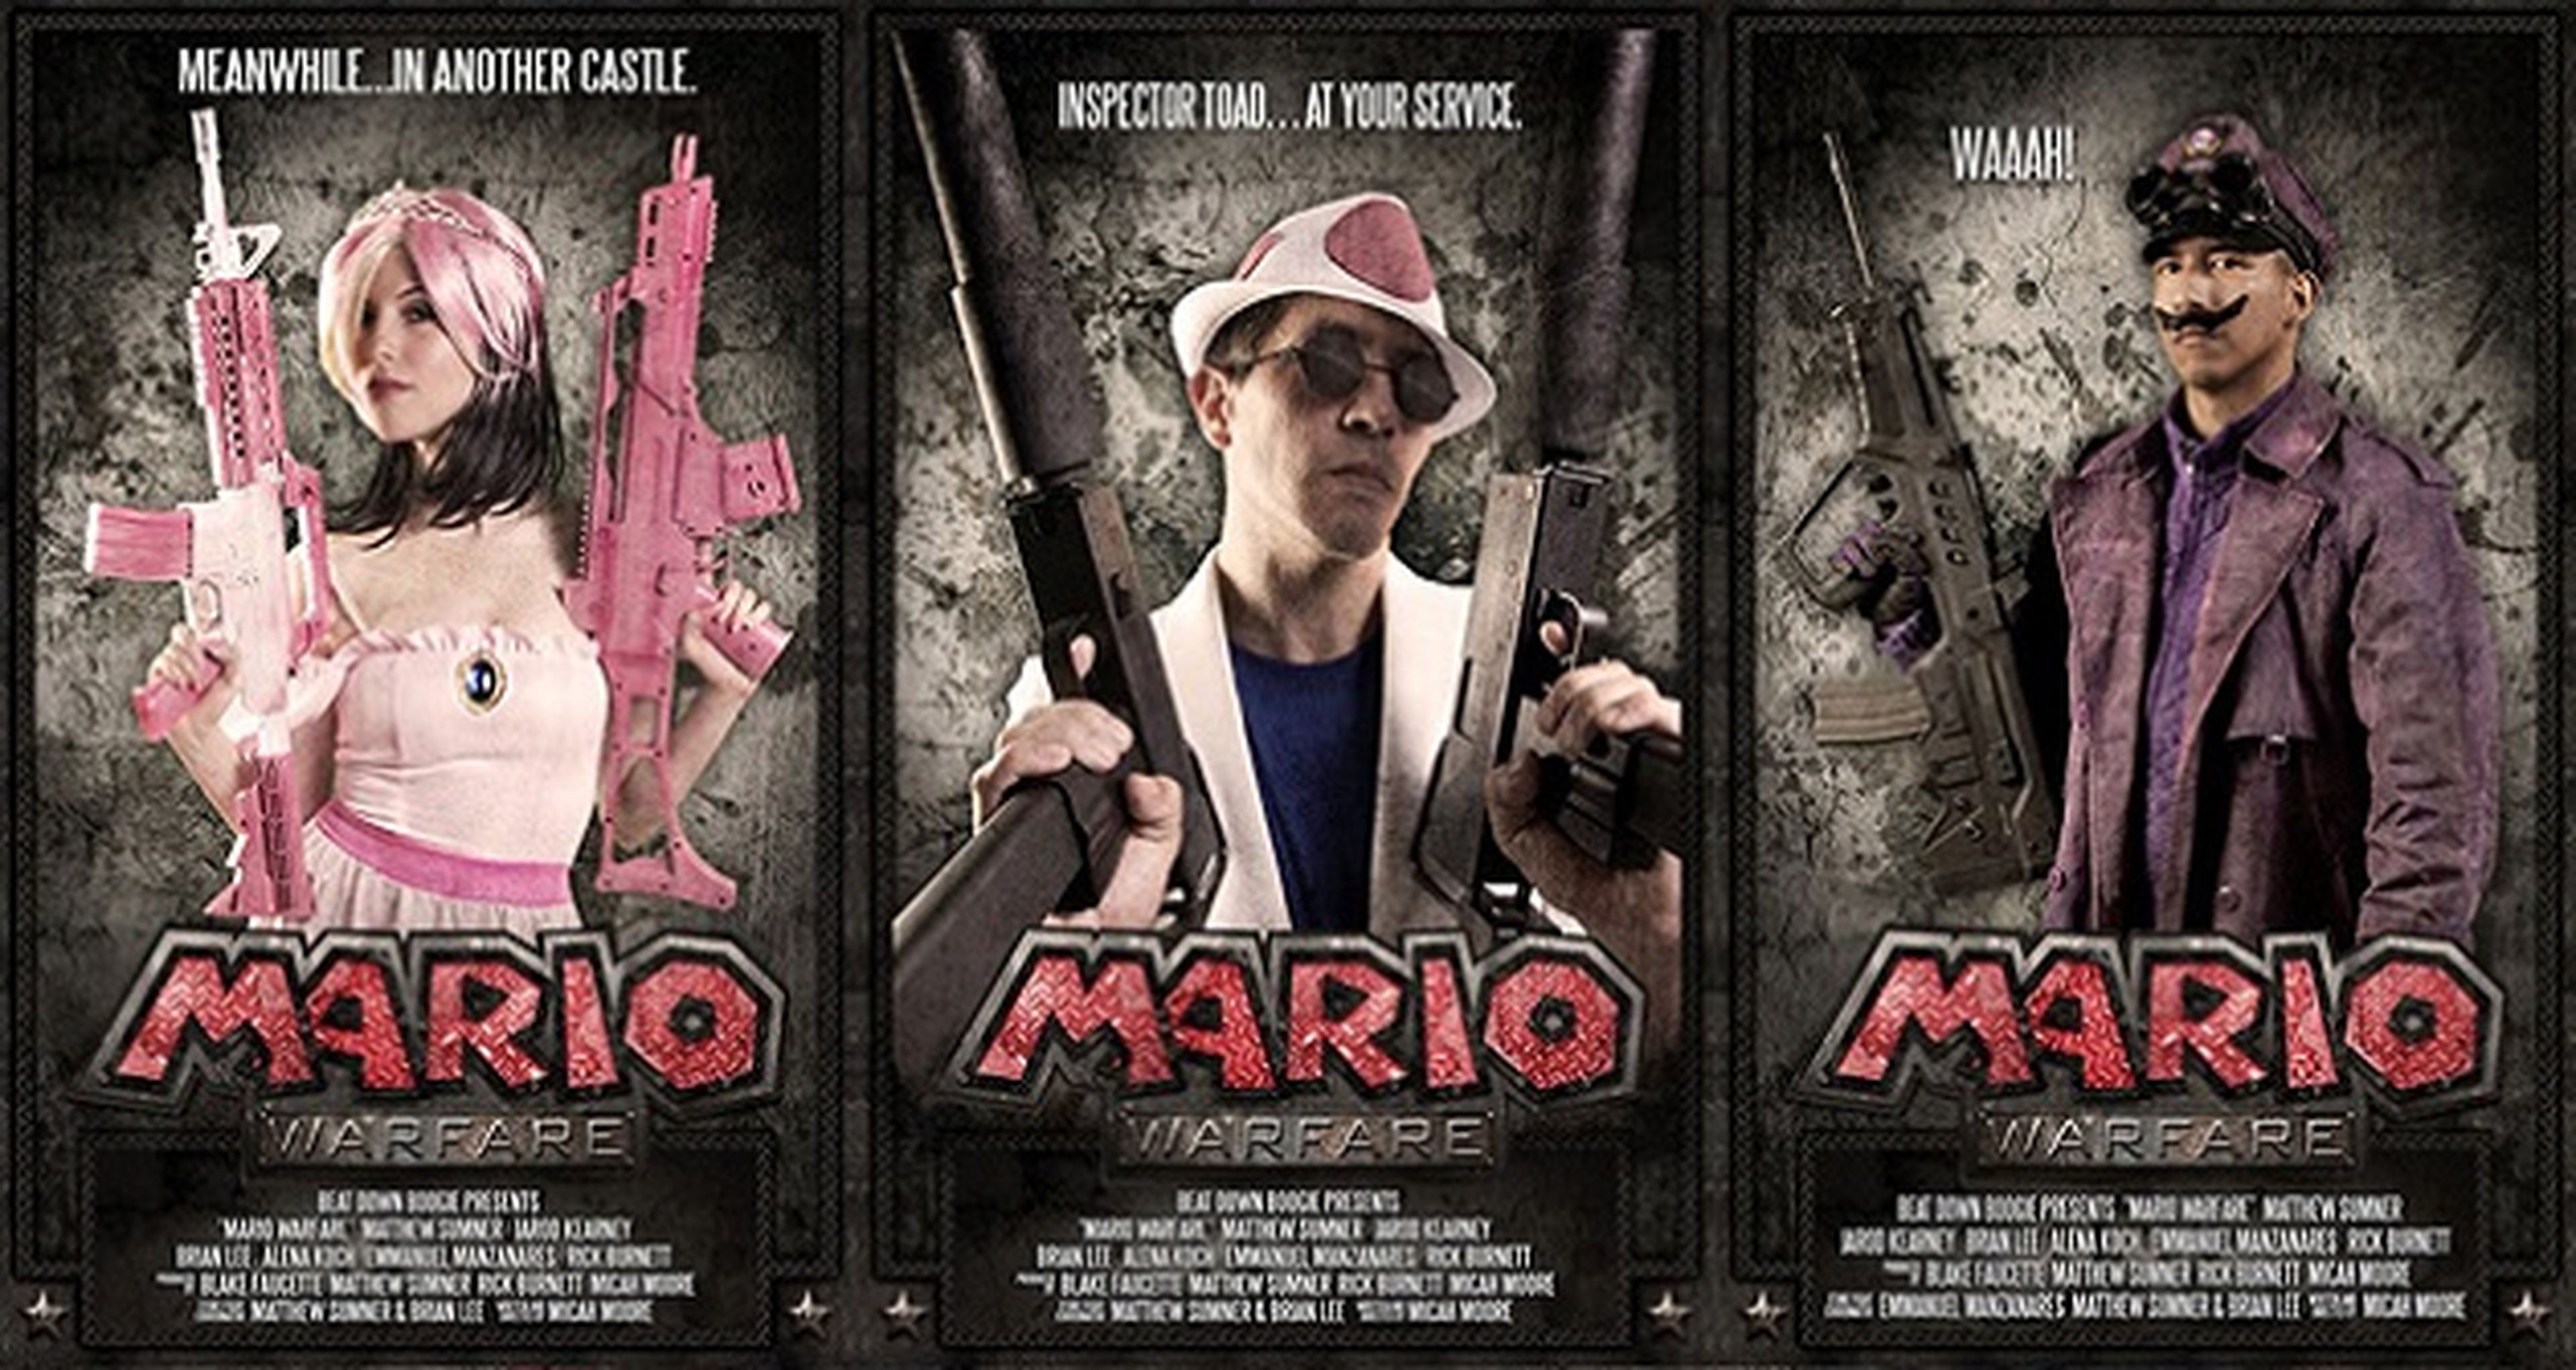 La web serie Mario Warfare ya es un éxito